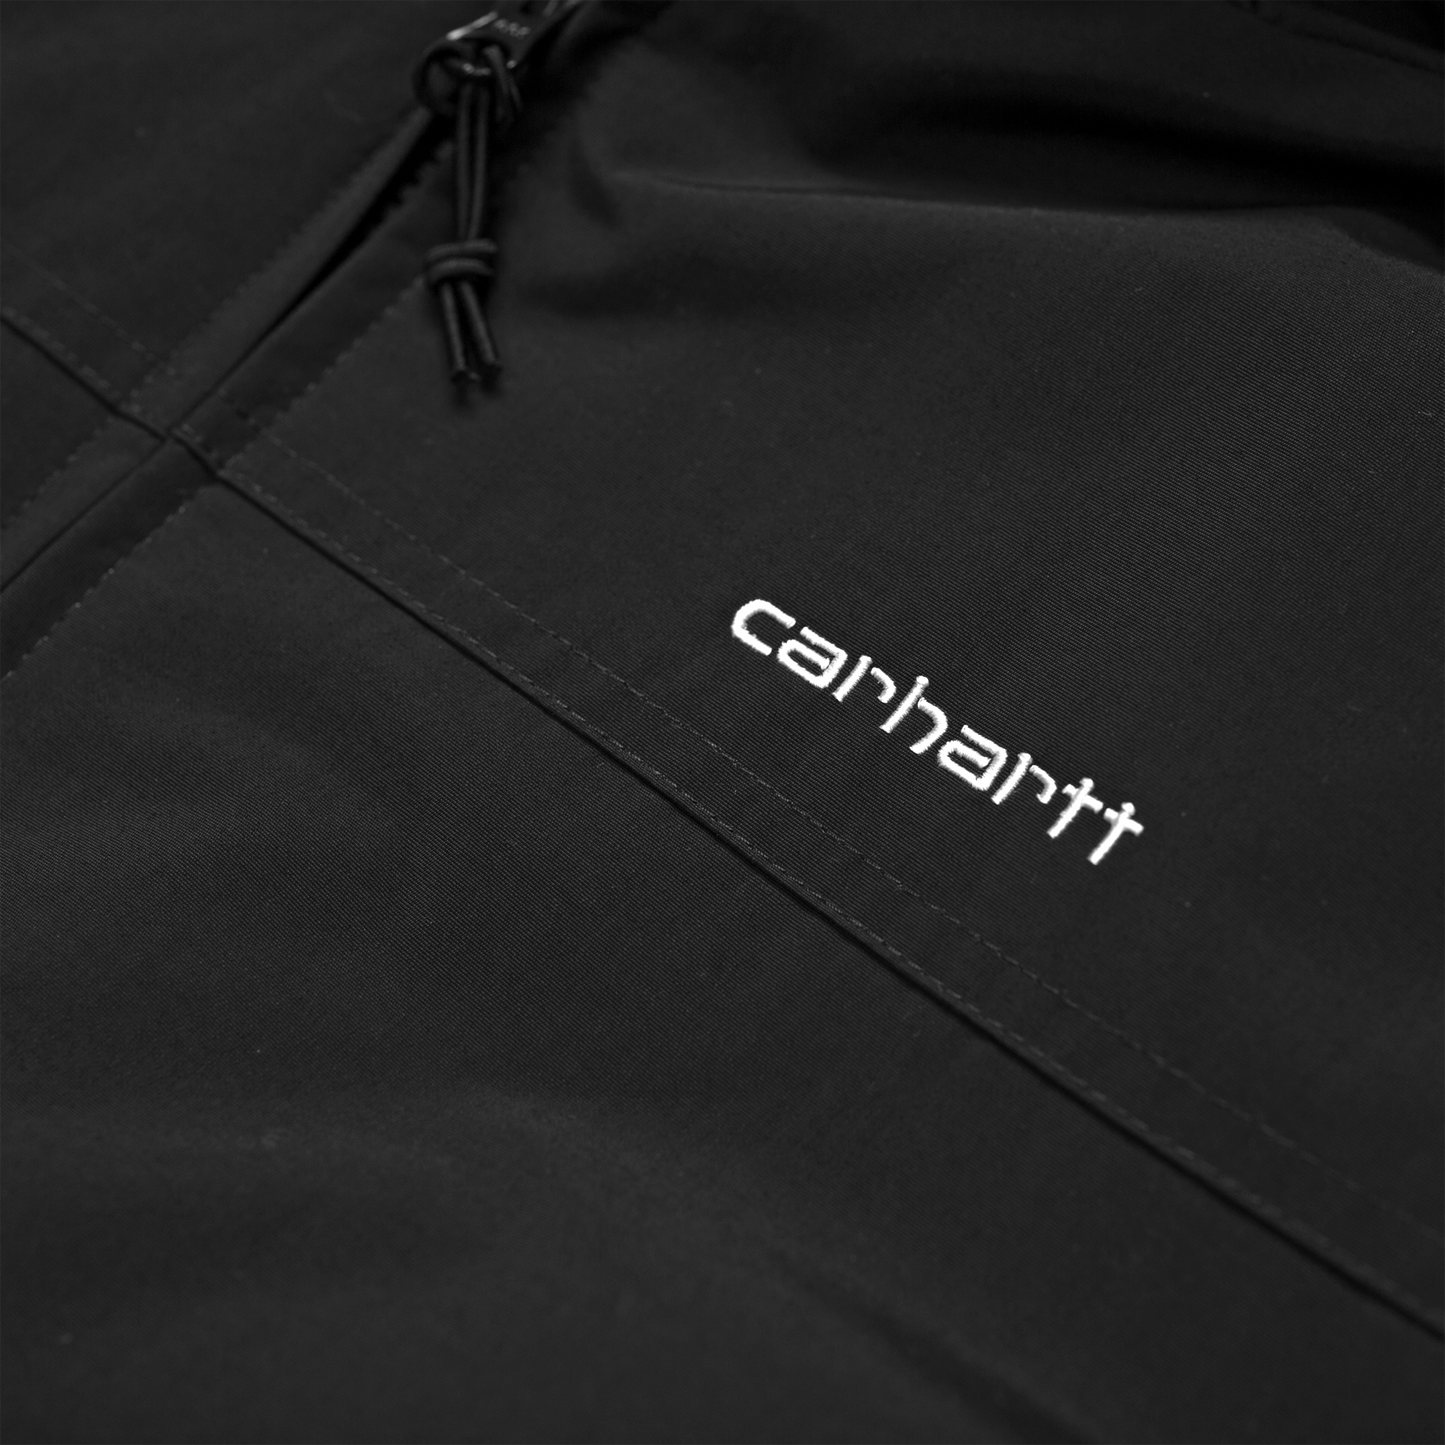 Carhartt WIP Hooded Sail Jacket em preto com logo bordado na frente em branco. Foto de detalhe do logo bordado.